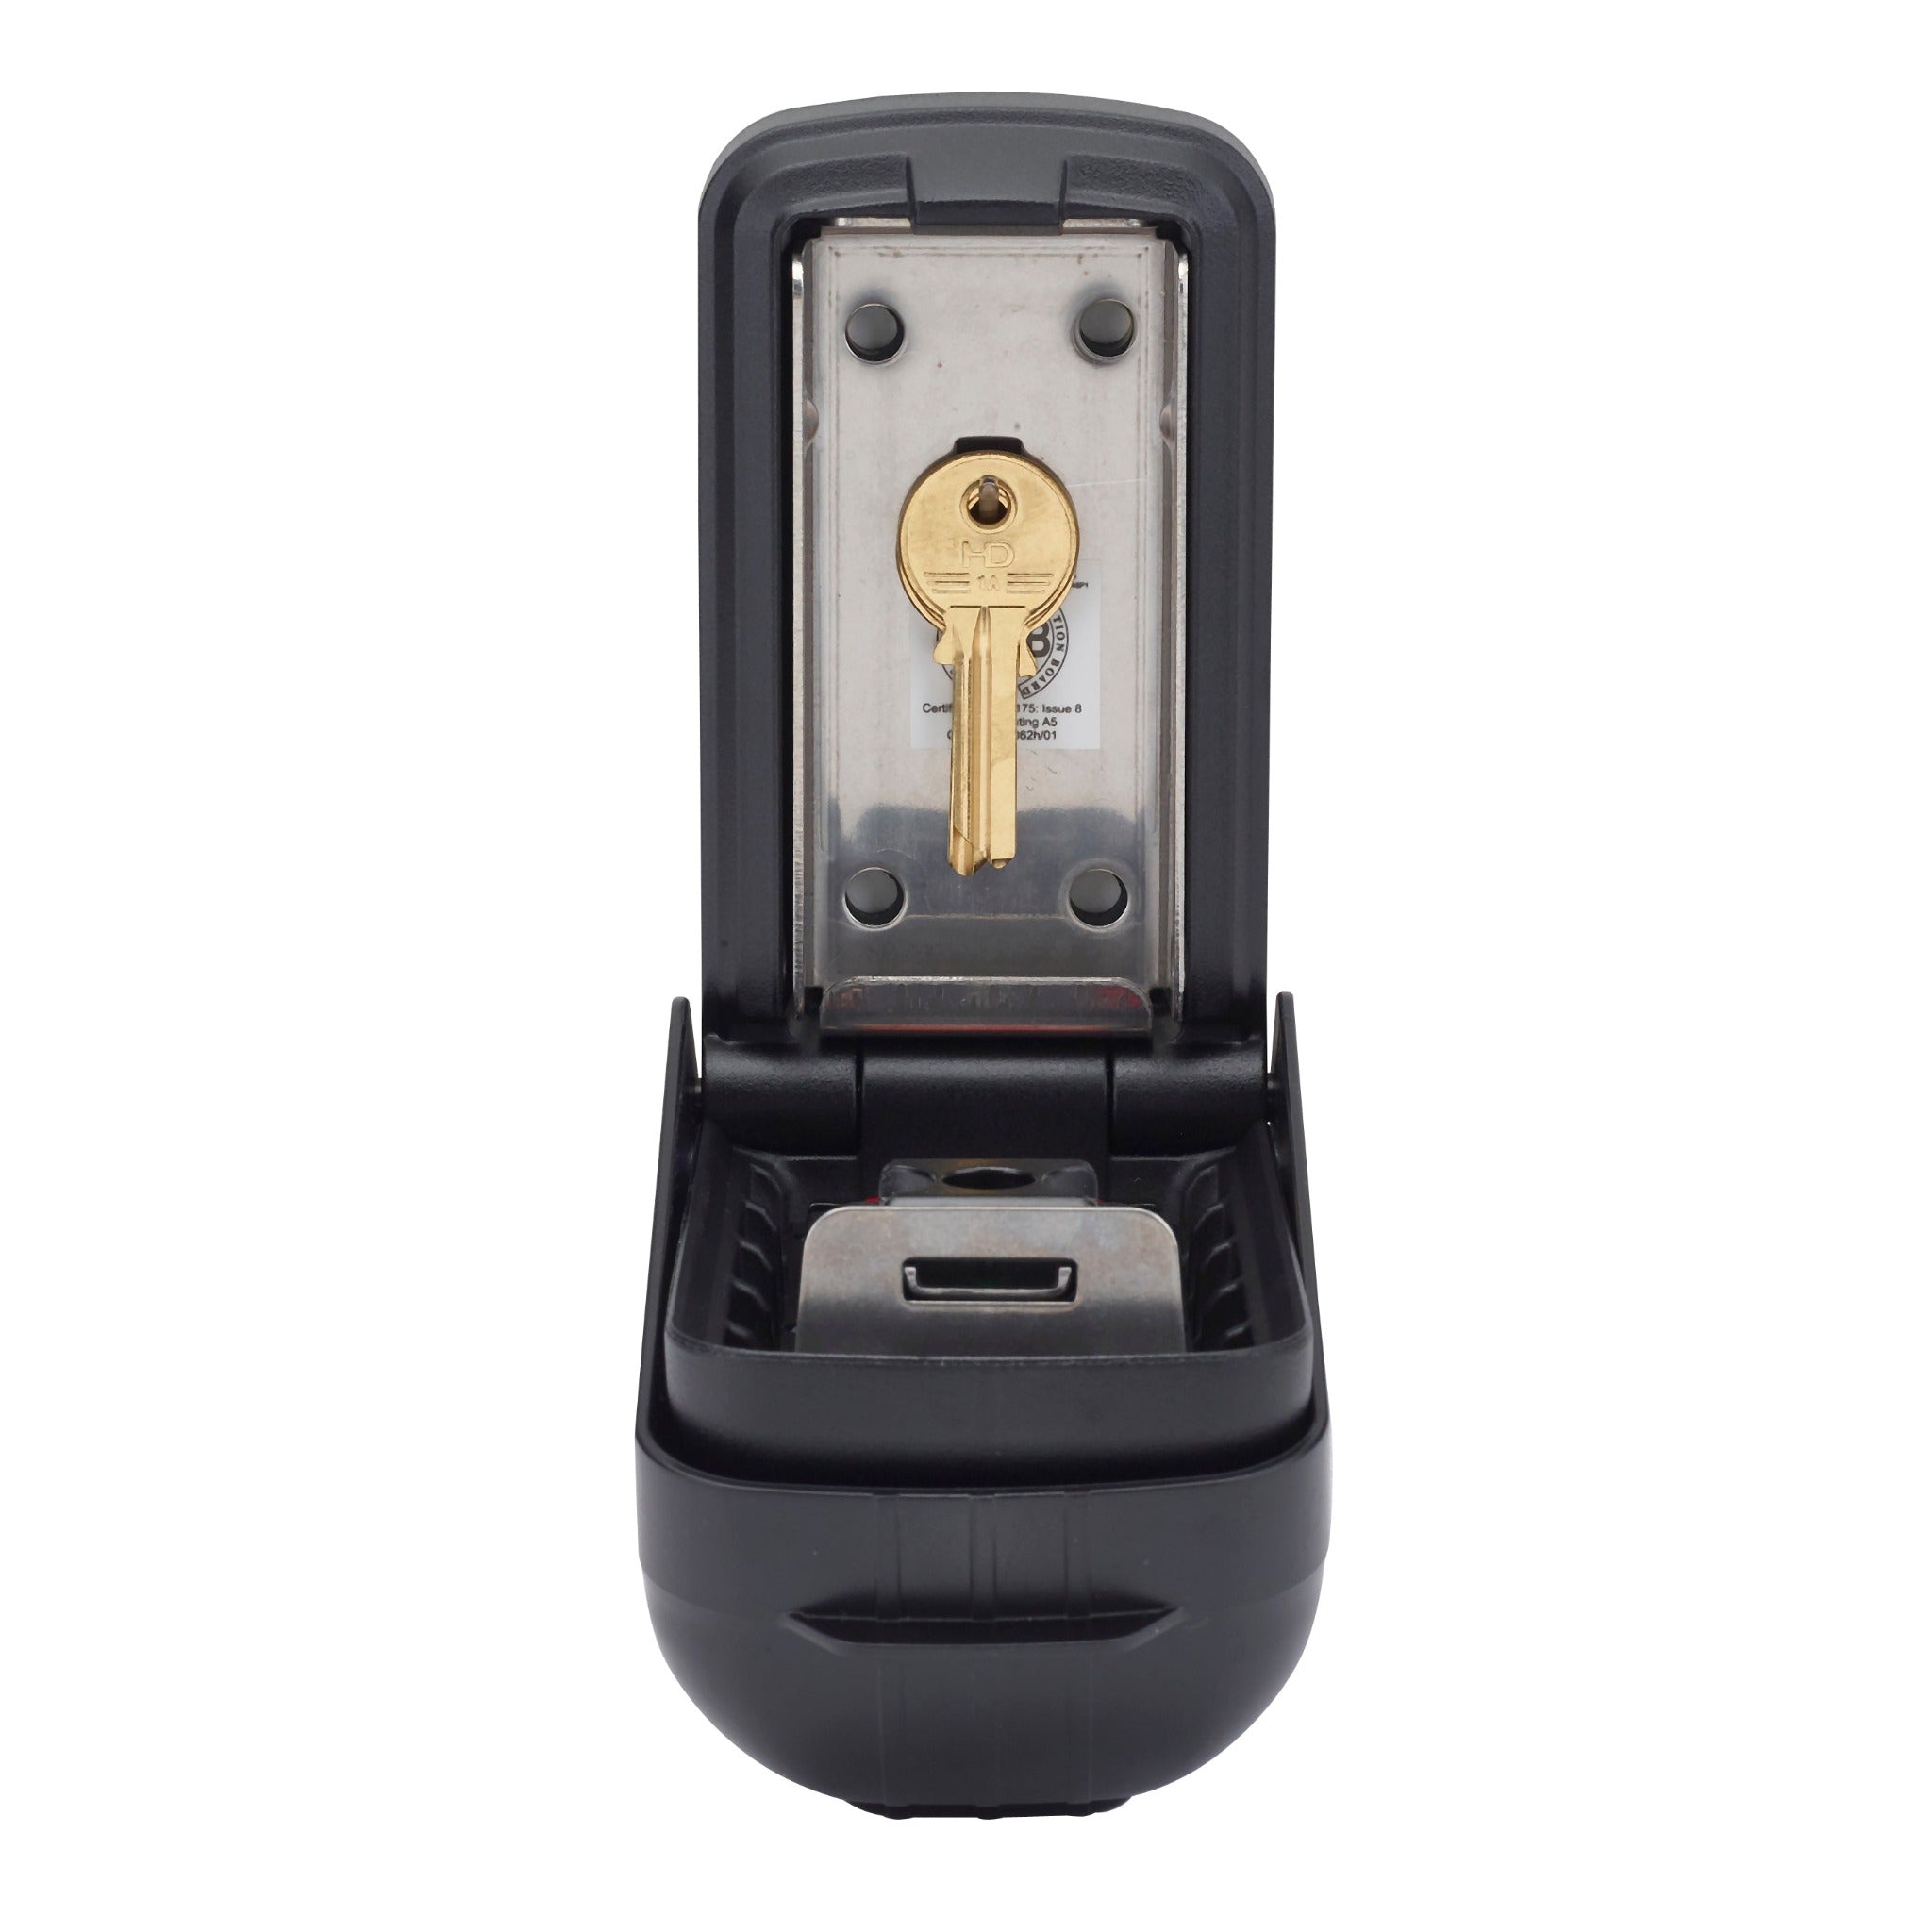 Open police preferred Supra P500 pro key safe with 2 yale keys on internal key hook